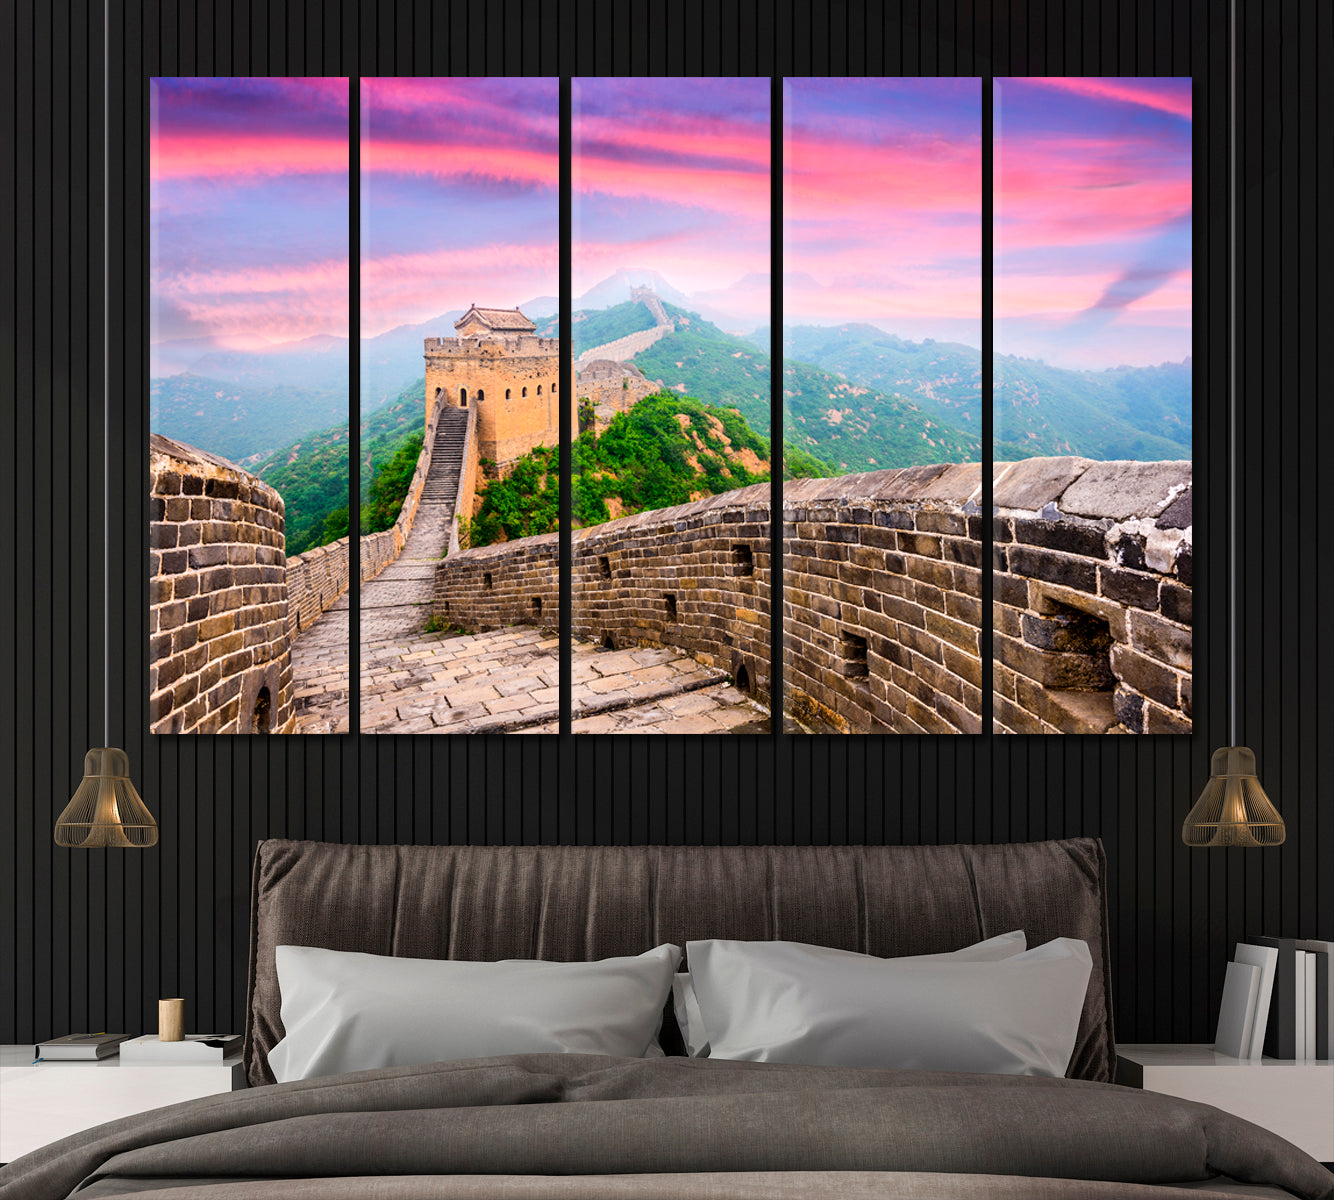 Great Wall of China Jinshanling Canvas Print ArtLexy 5 Panels 36"x24" inches 